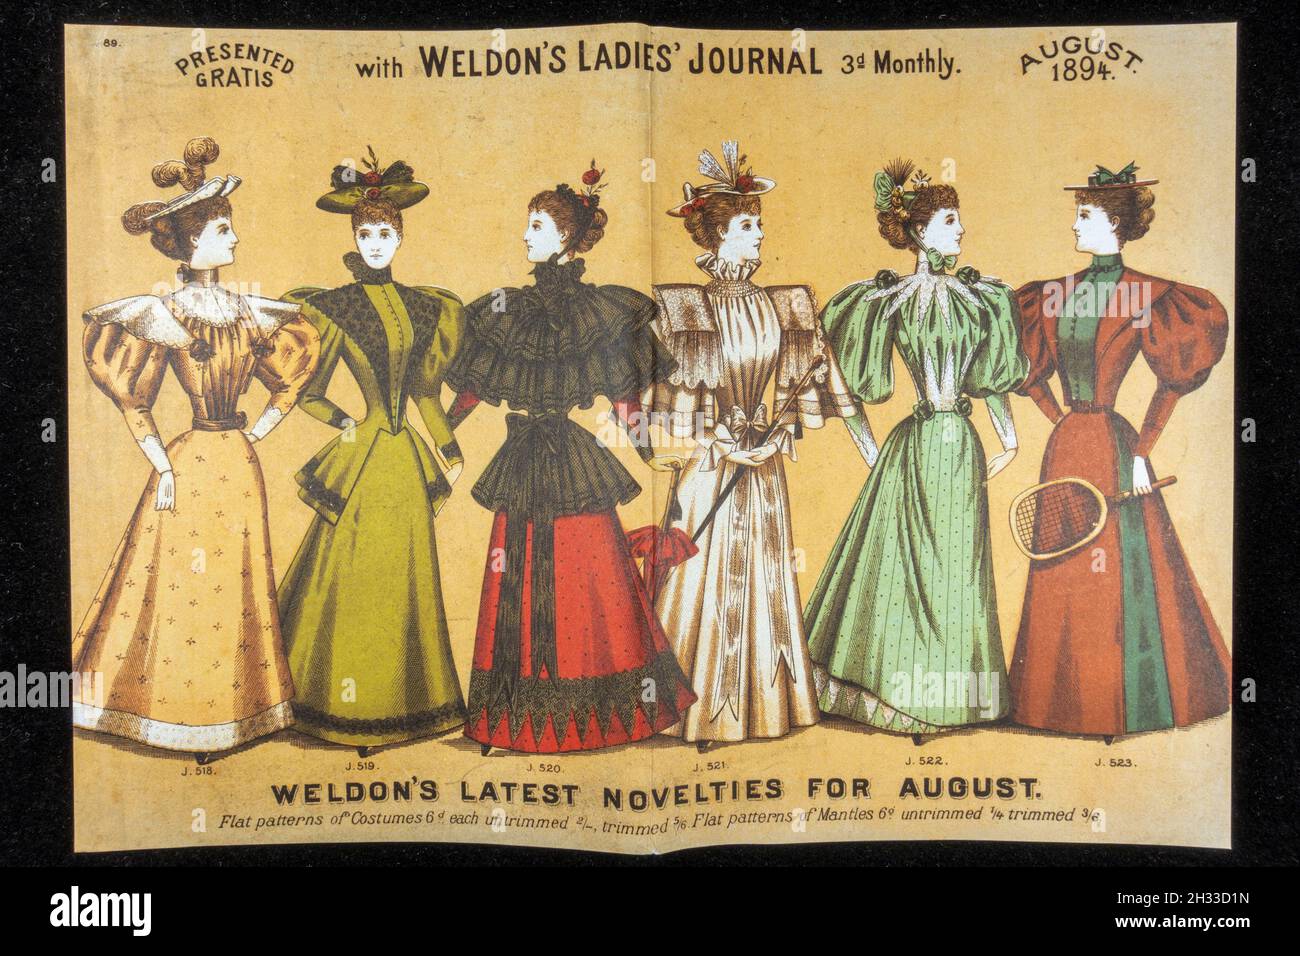 Affiche victorienne des dernières nouveautés de Weldon présentée avec le Weldon's Ladies Journal en août 1894 (réplique). Banque D'Images